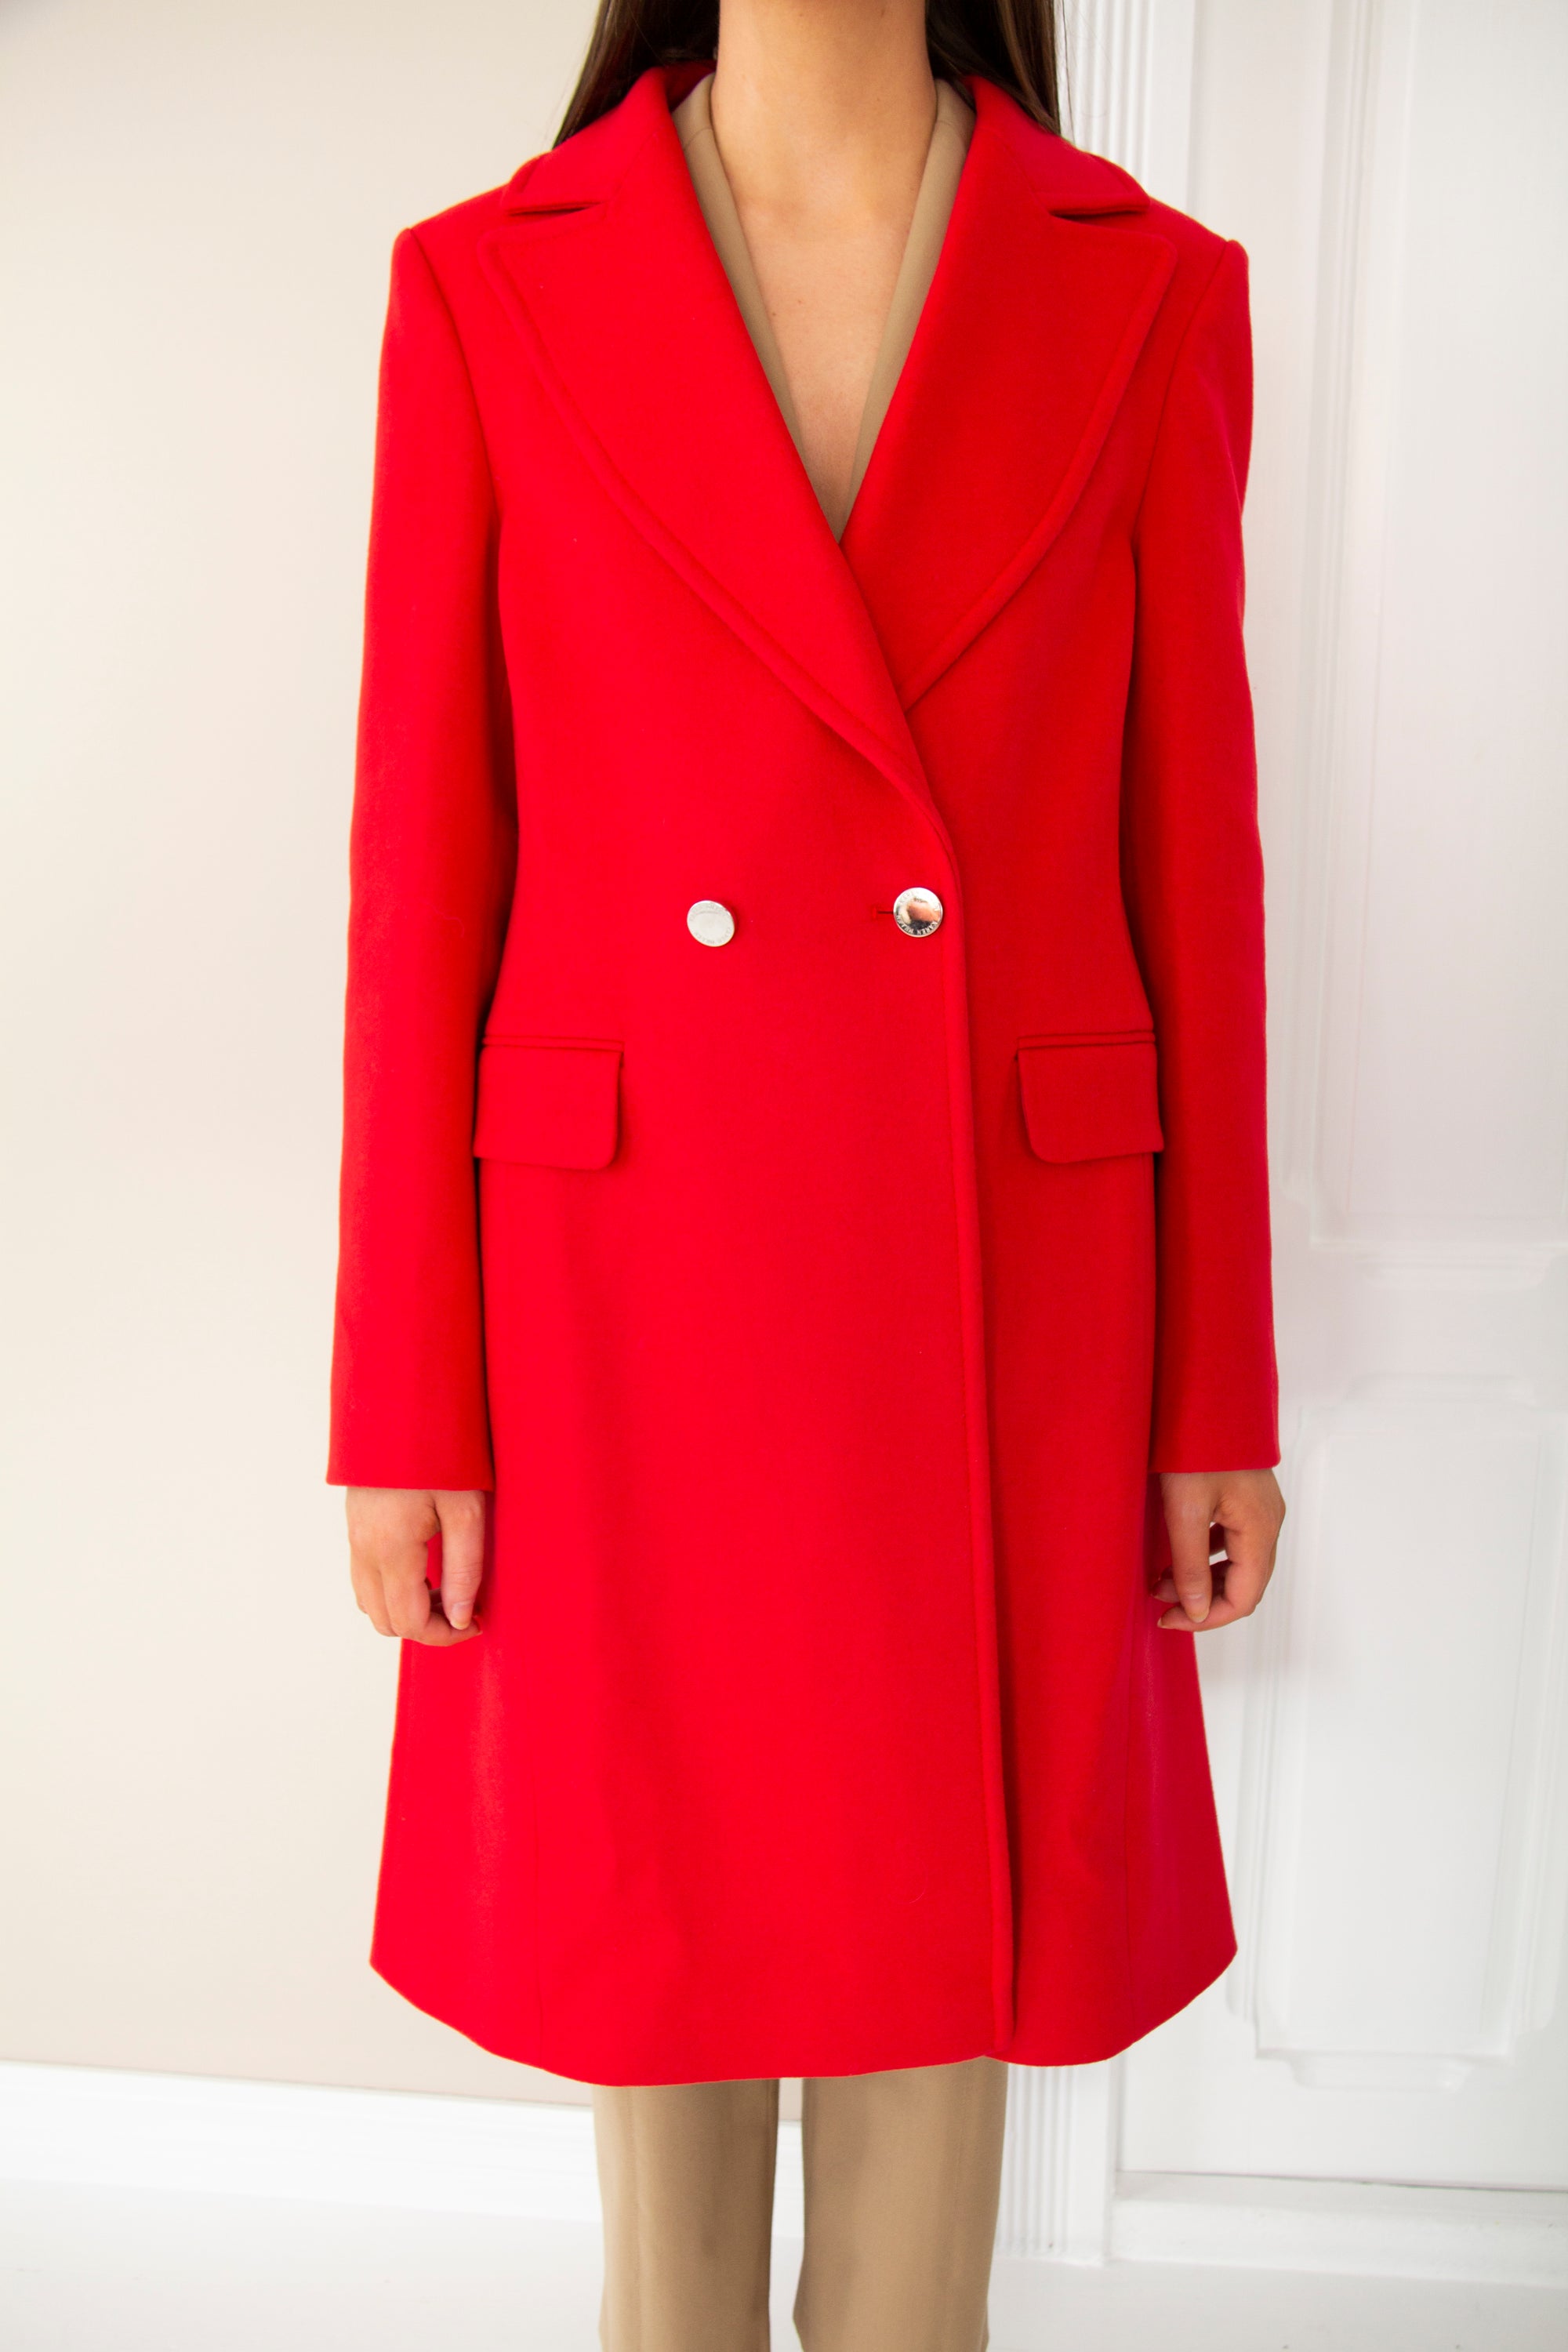 KAREN MILLEN - Red Coat